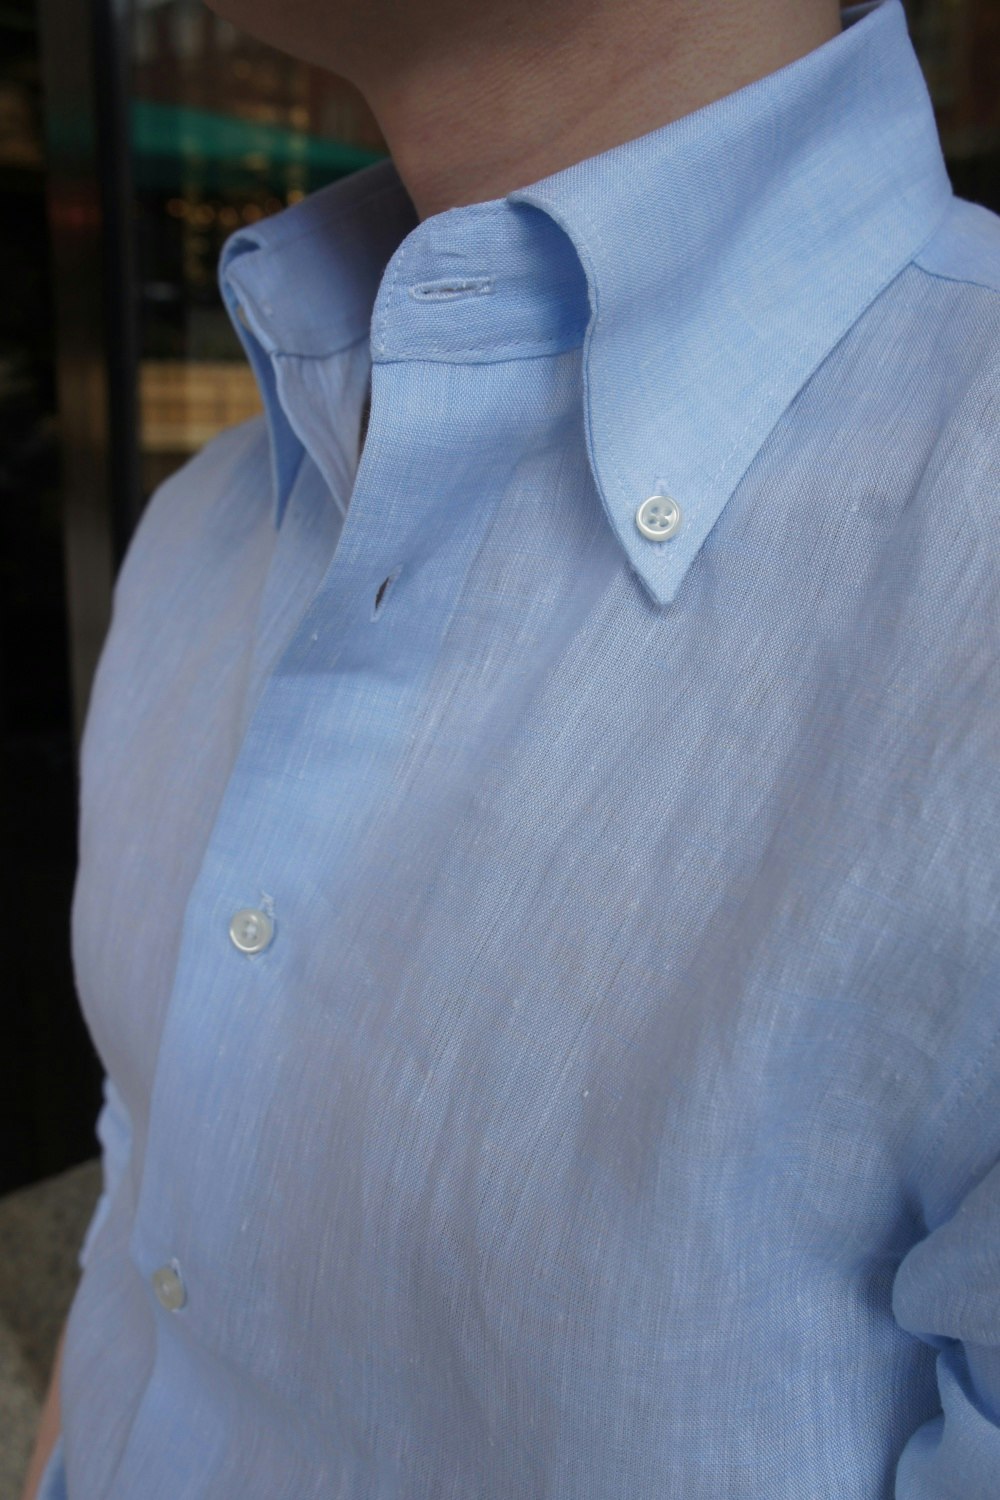 Enfärgad Linneskjorta - Button Down - Ljusblå